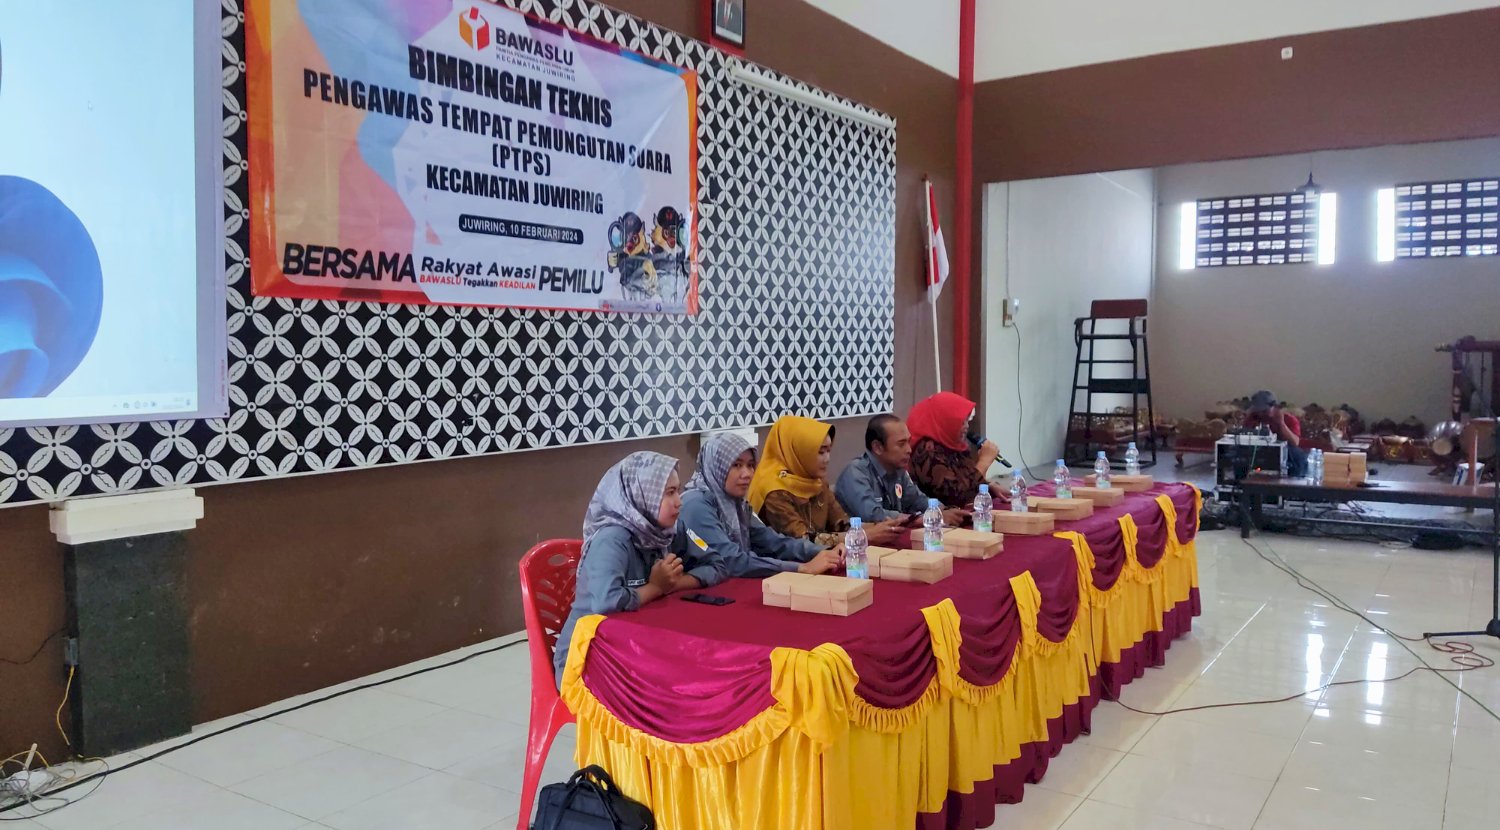 Bimbingan Teknis Pengawas Tempat Pemungutan Suara (PTPS) Kecamatan Juwiring